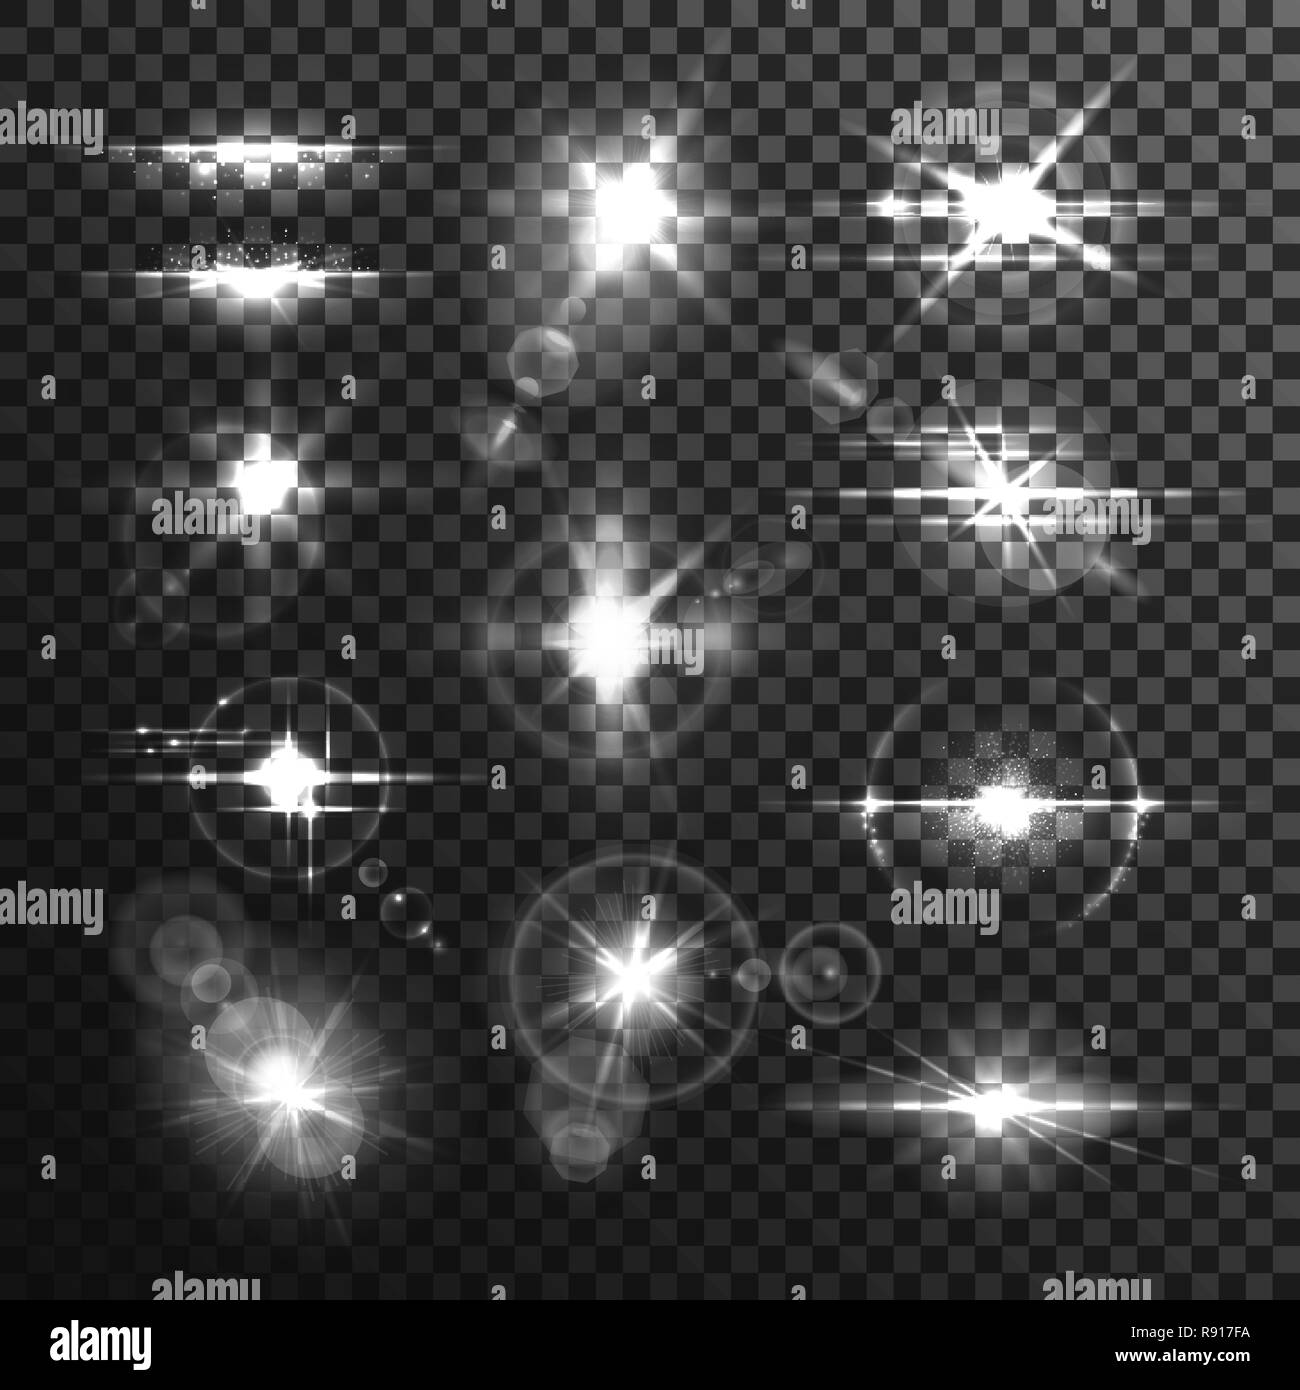 Lens flare star beamor blanc effet lumière Illustration de Vecteur